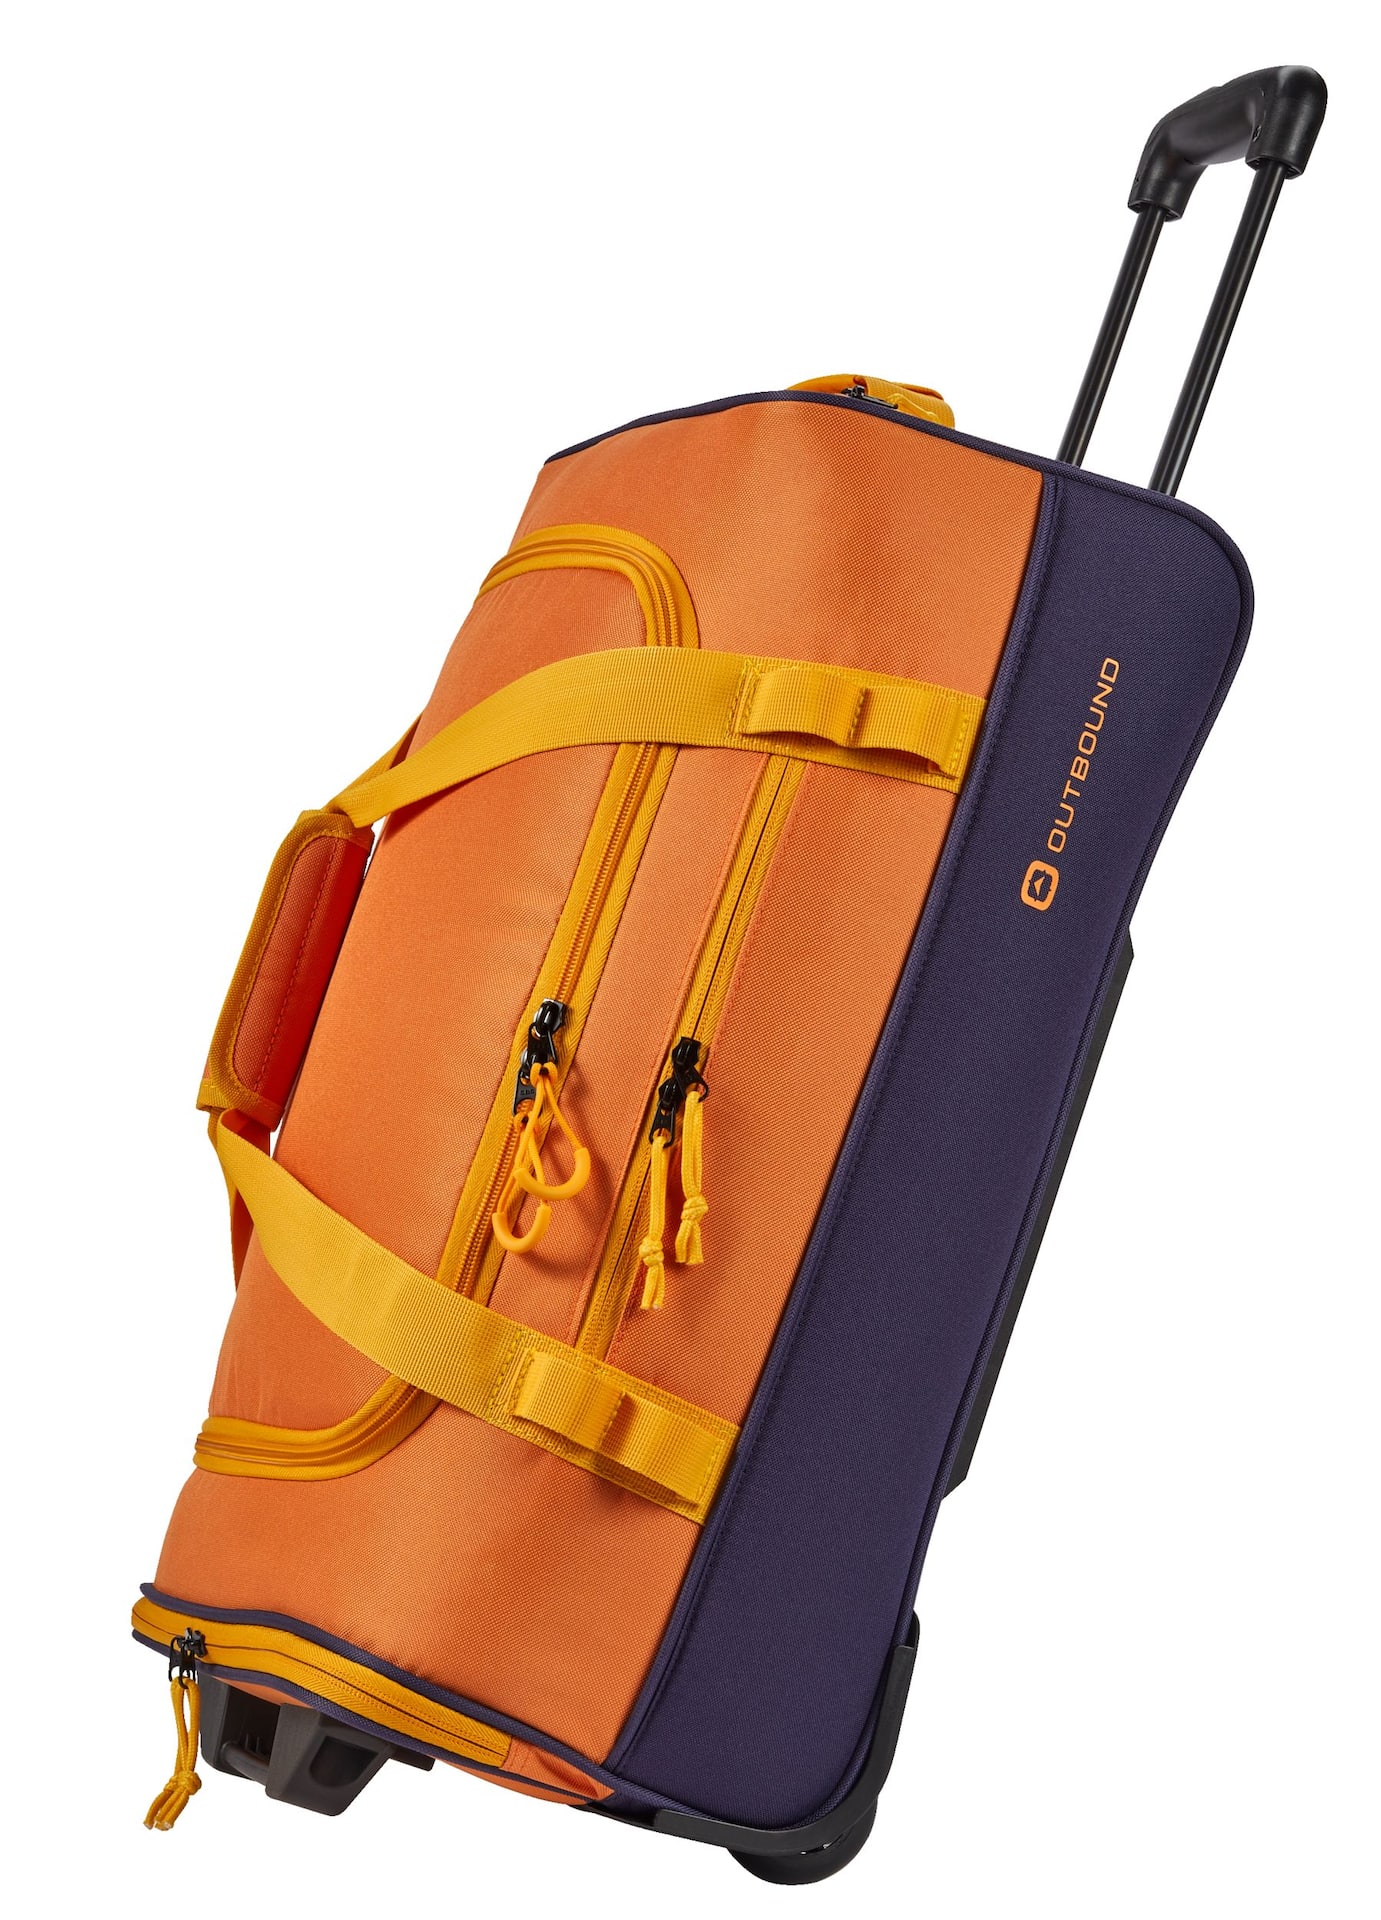 Grand sac de voyage avec poche humide et compartiment à chaussures, sac  fourre-tout pour les sports de voyage., Mode en ligne